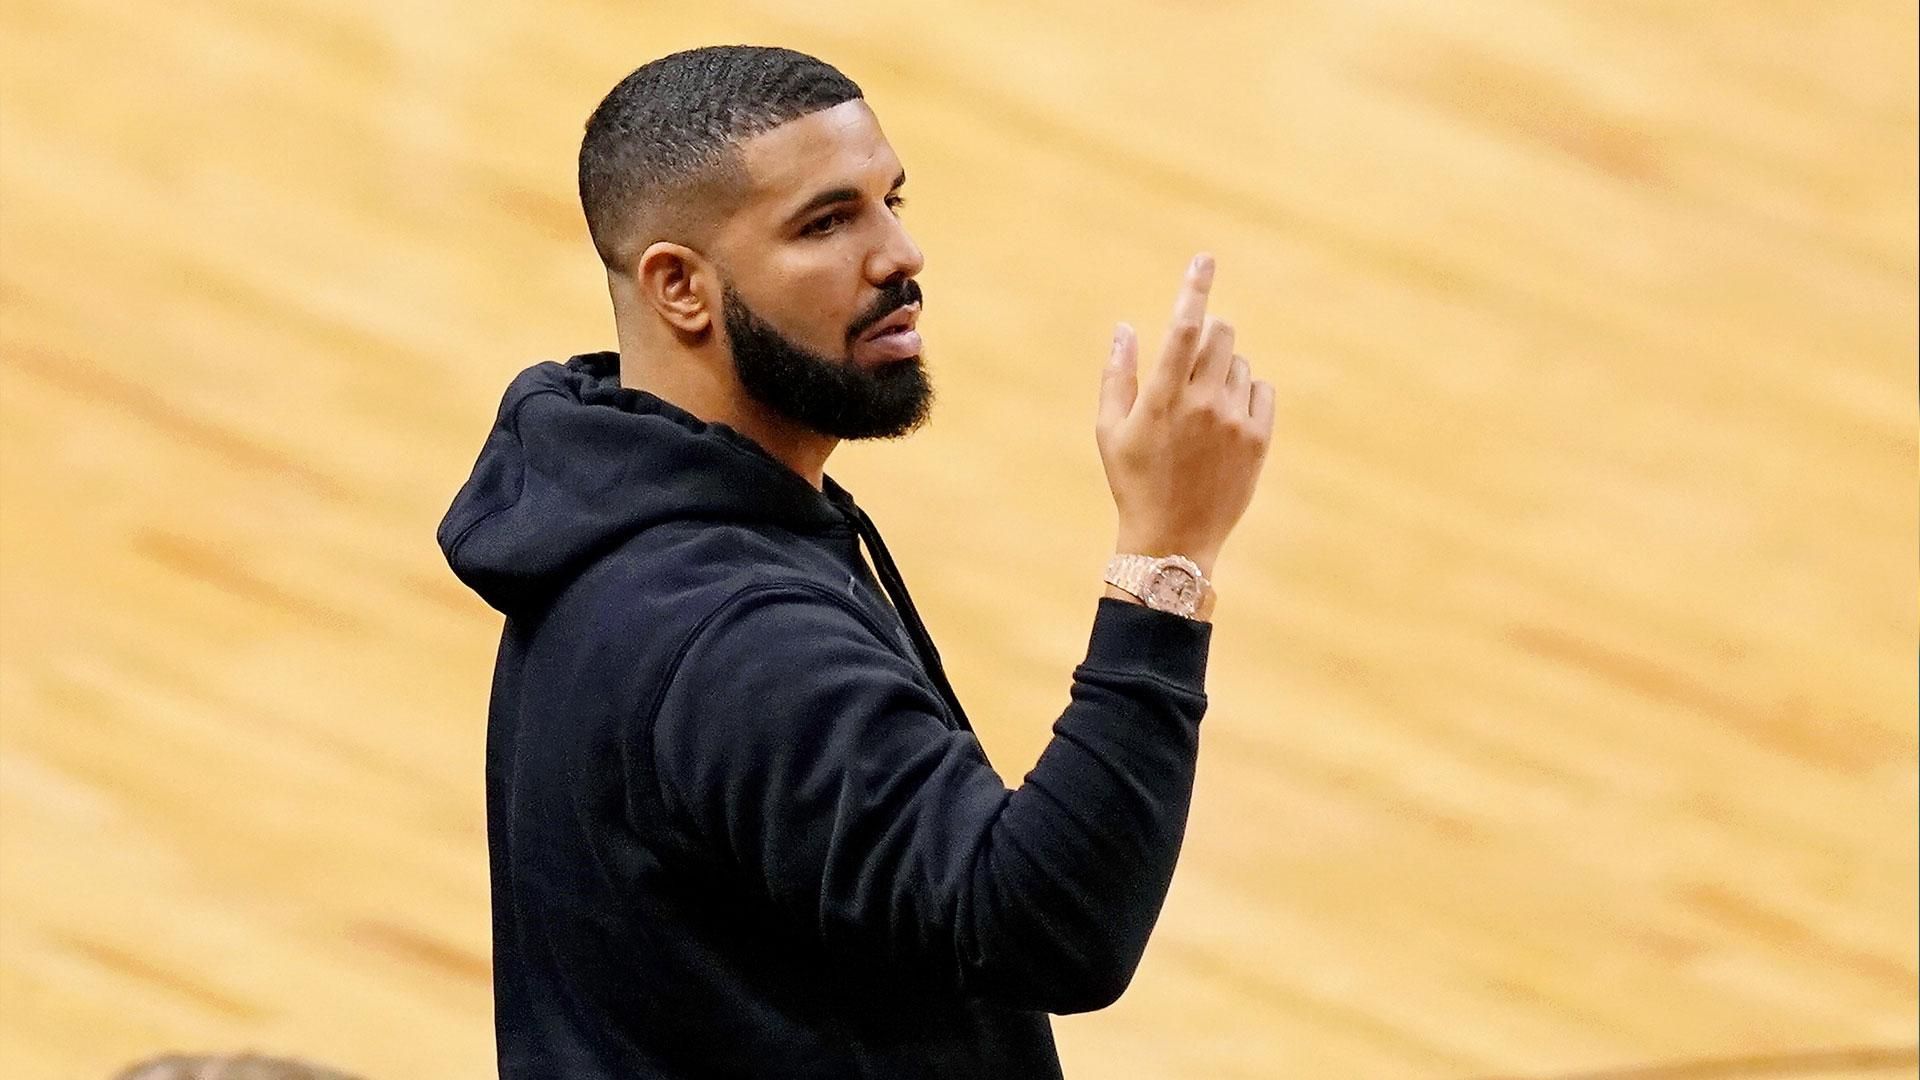 Рэпер Drake одолжил свой самолет команде НБА, чтобы она добралась на матч в Индию